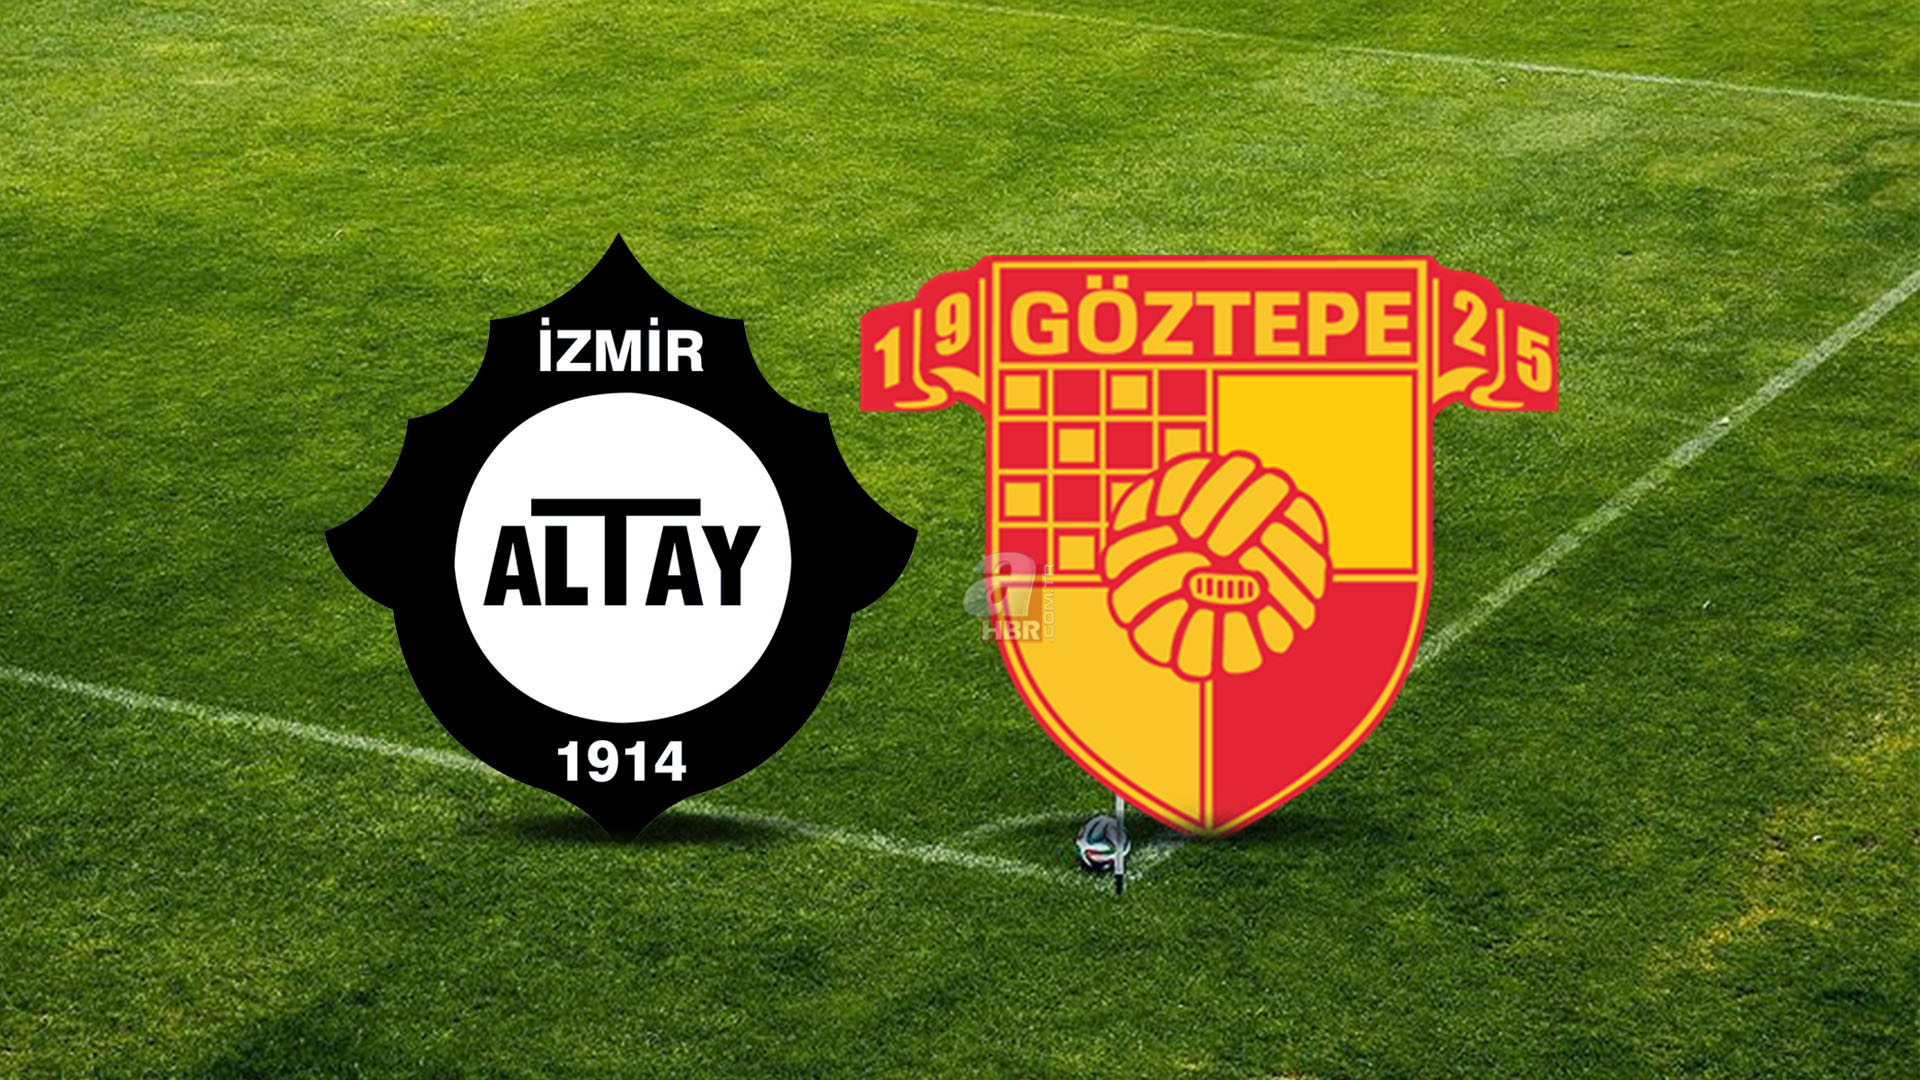 18 yıl sonra dev derbi! Altay Göztepe maçı ne zaman, saat kaçta? Süper Lig 5. hafta Altay Göztepe maçı hangi kanalda?